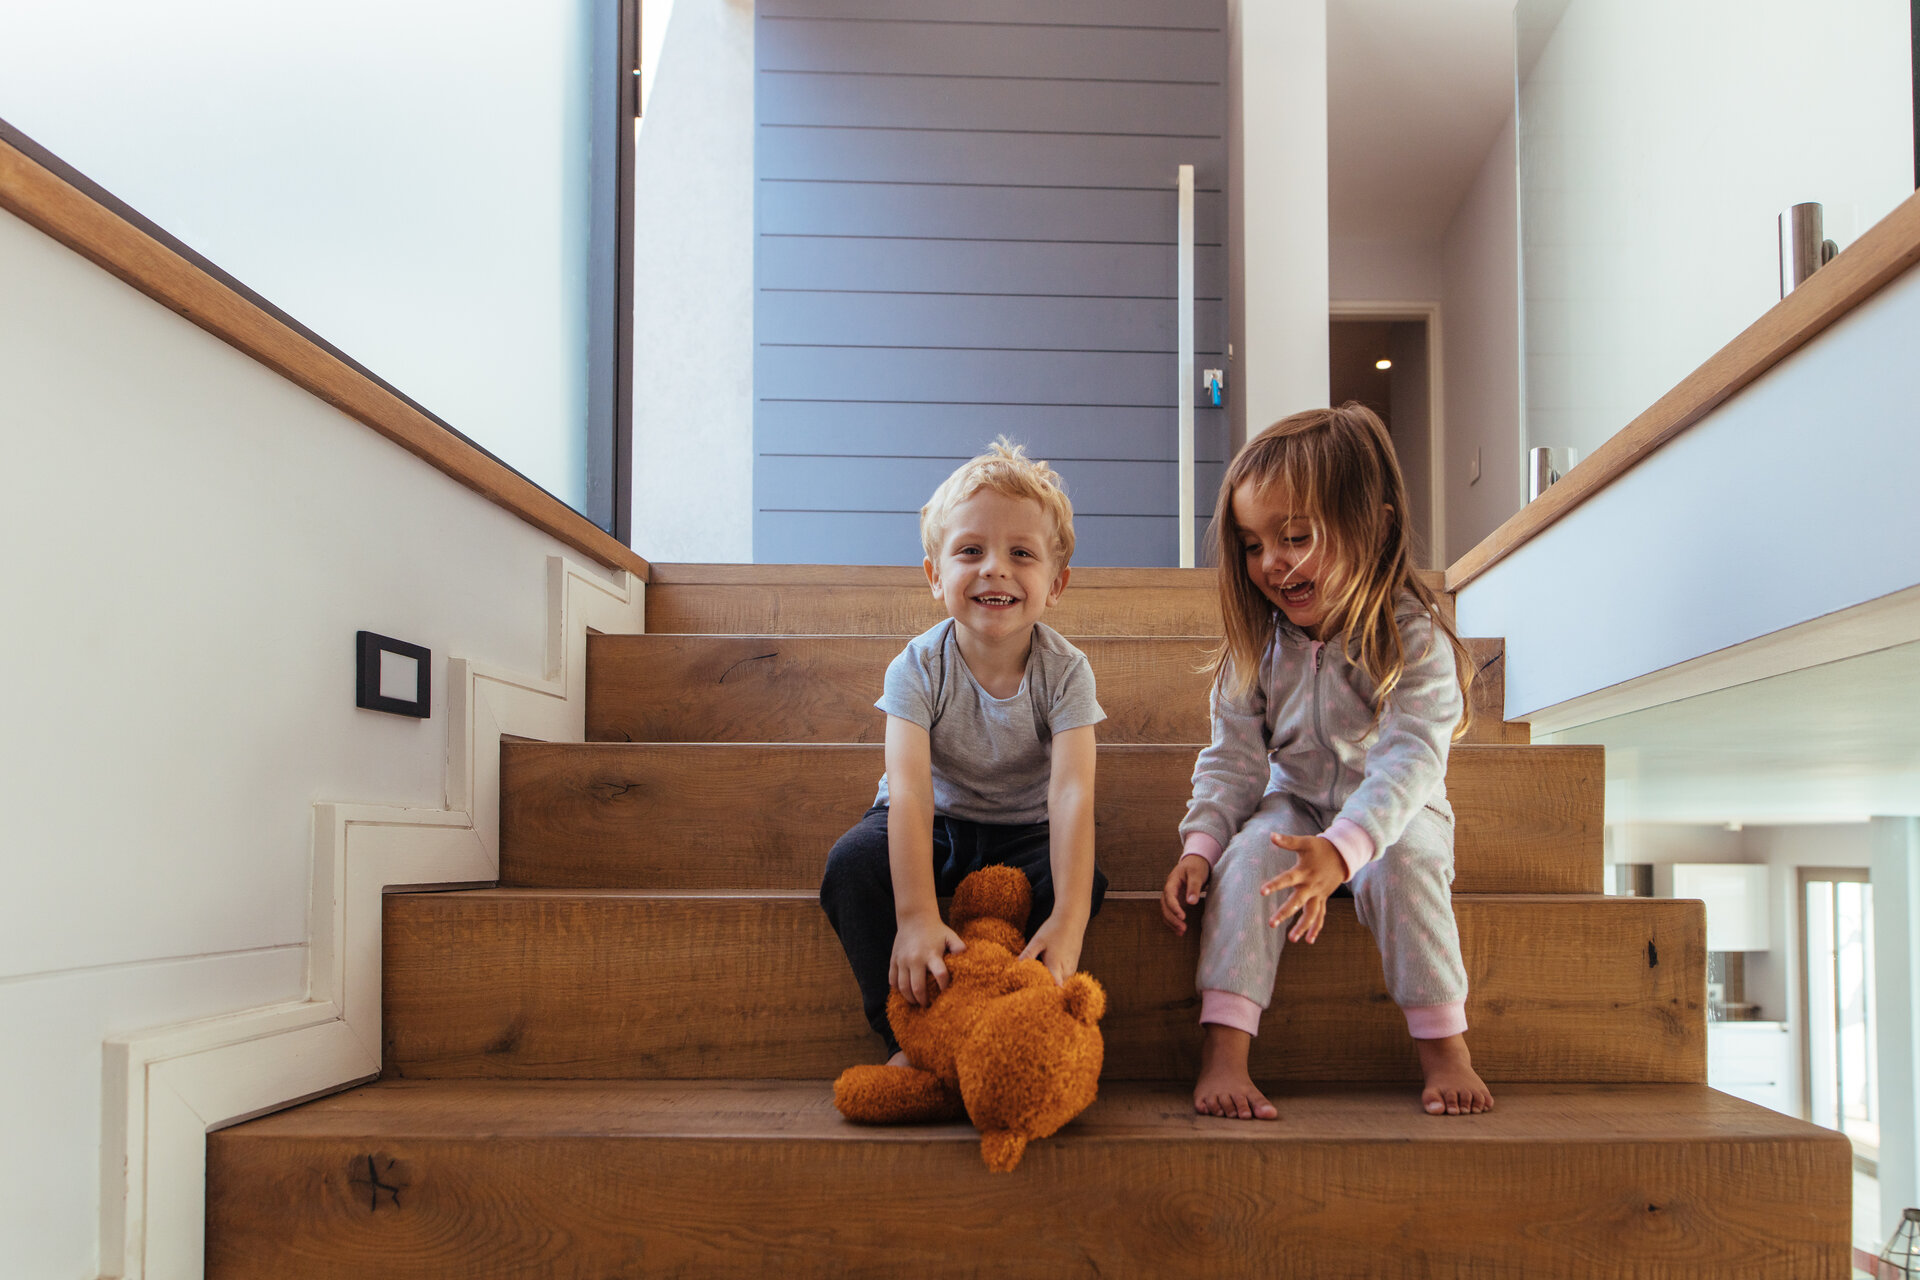 Kleine Kinder sitzen auf einer Treppe und der Junge greift nach einem Teddybär.